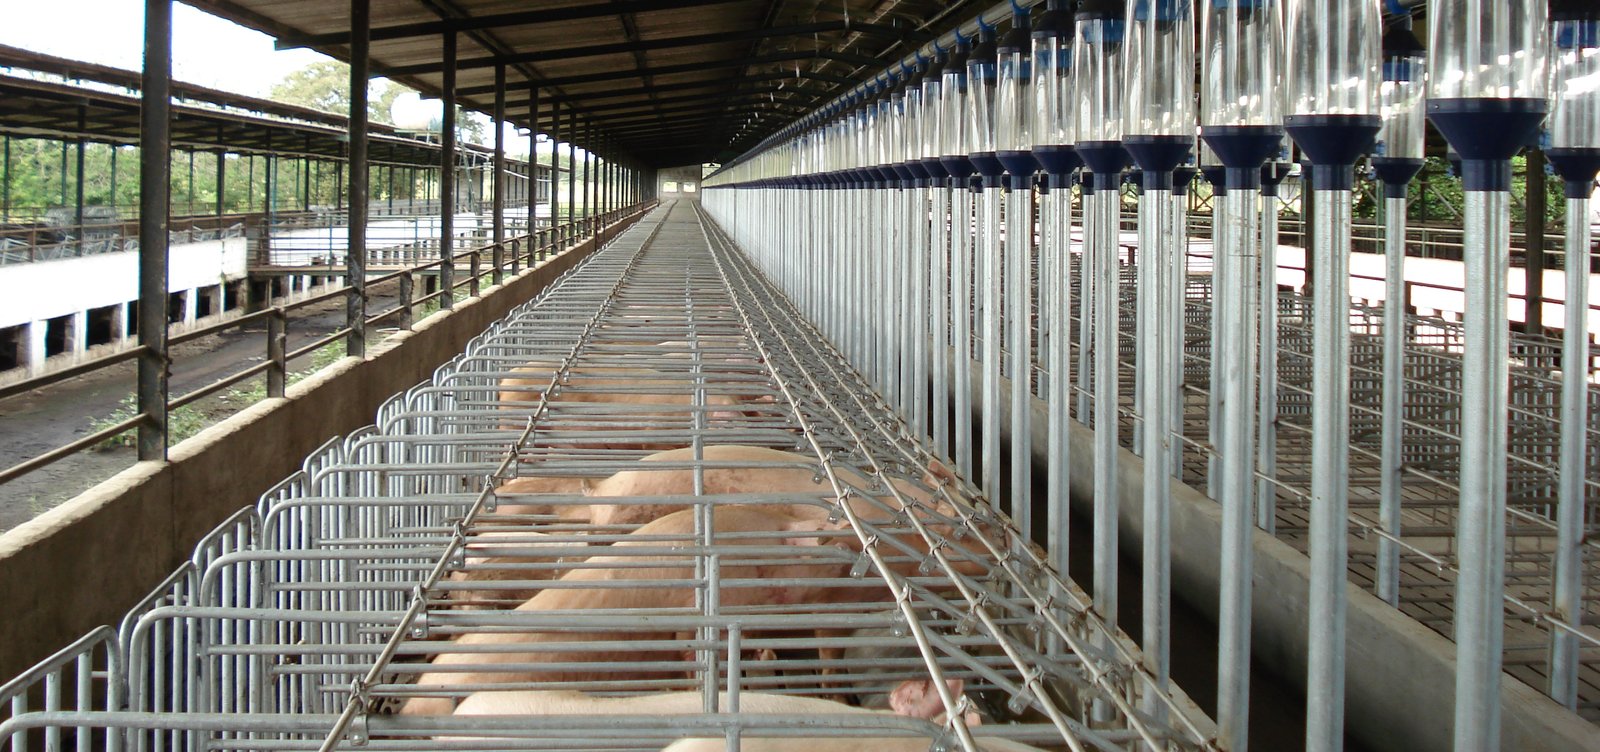 Cría de cerdos -Sistema de producción intensiva de cerdos -  Confinamiento intensivo de cerdos